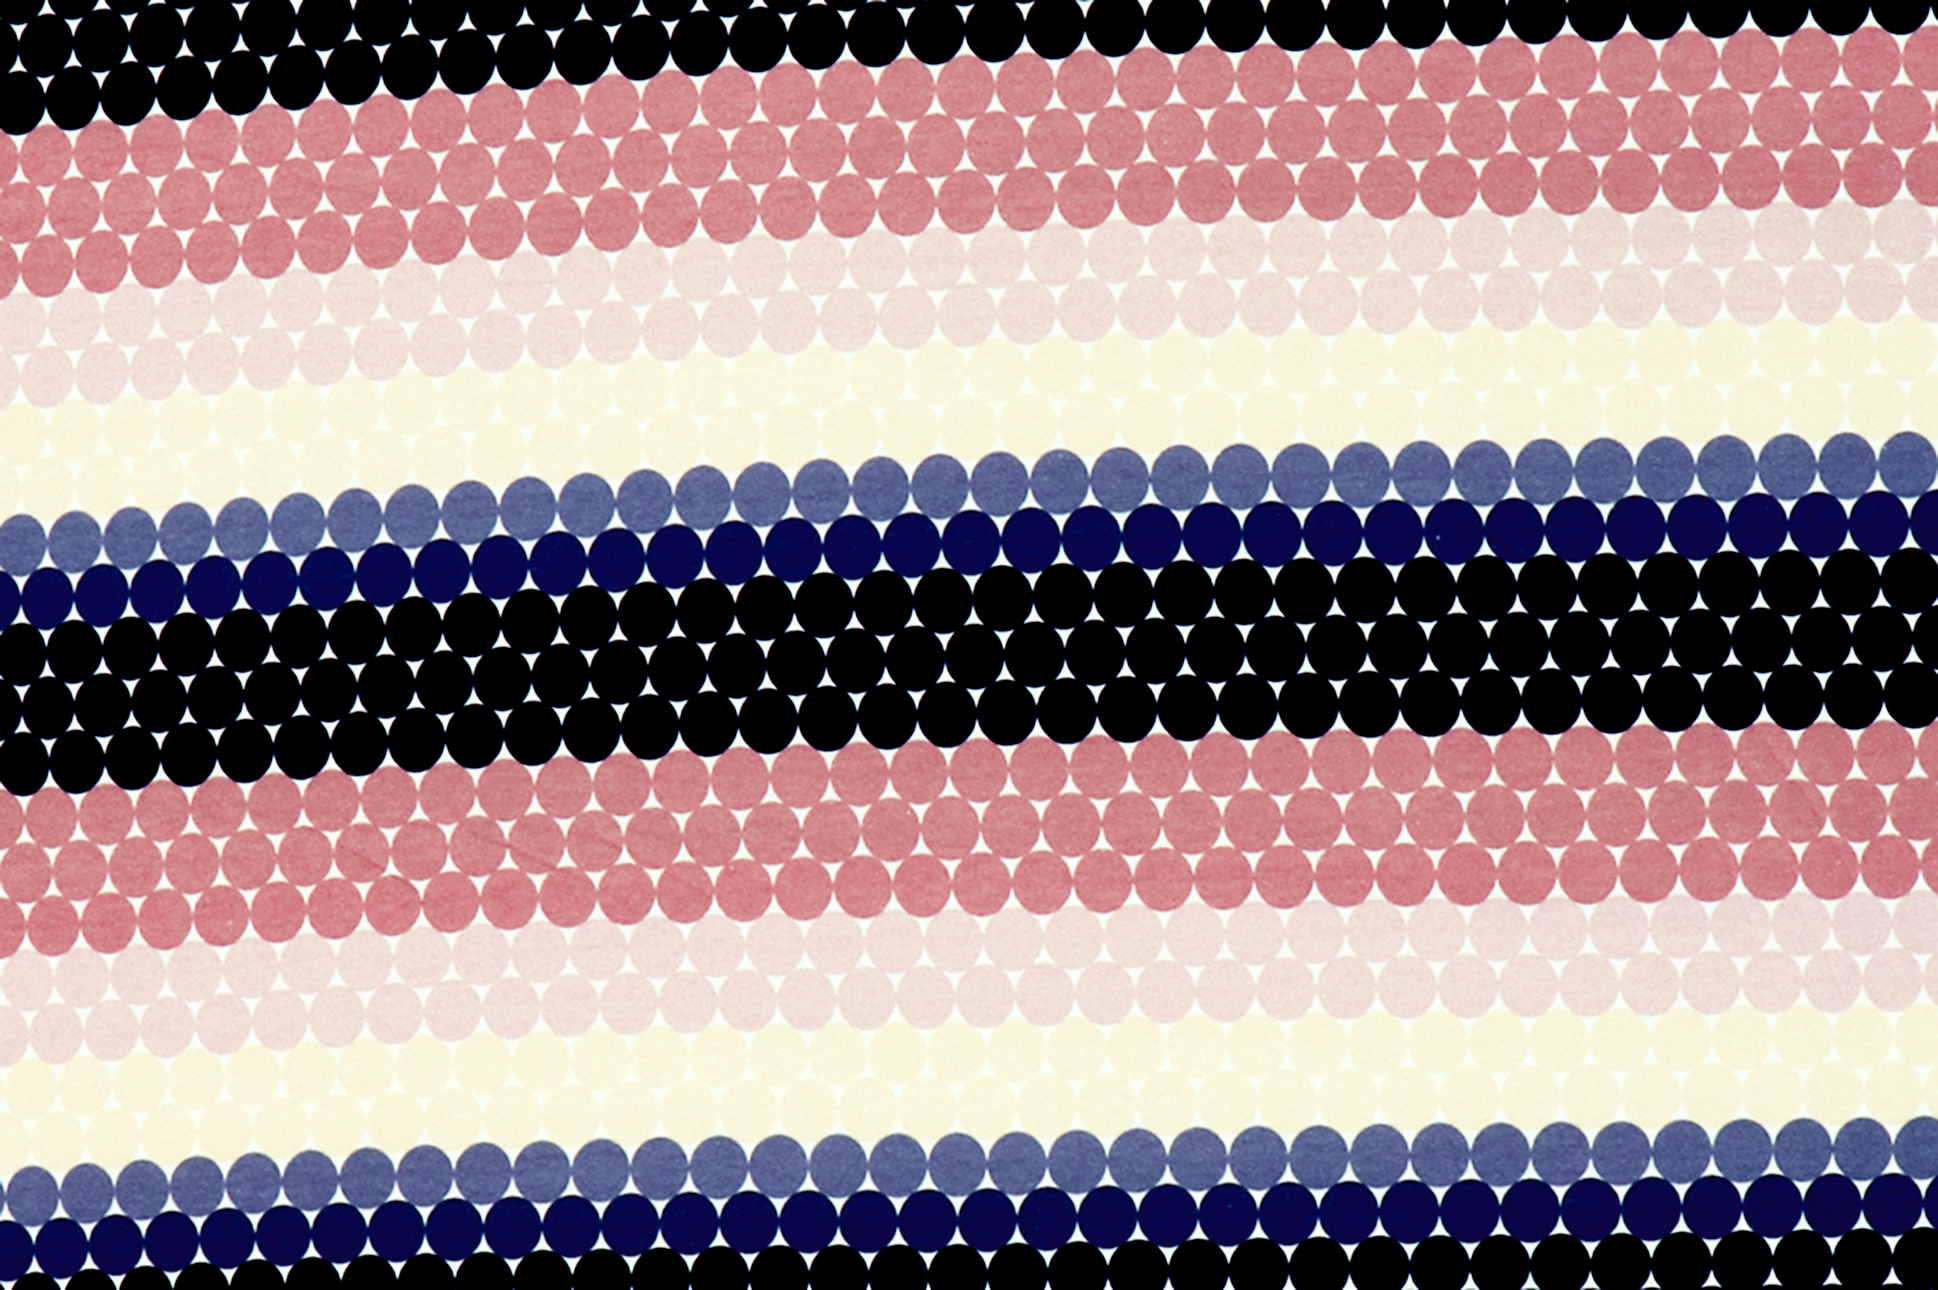 French Terry "Fräulein von Julie", punti geometrici in tonalità di blu e rosa